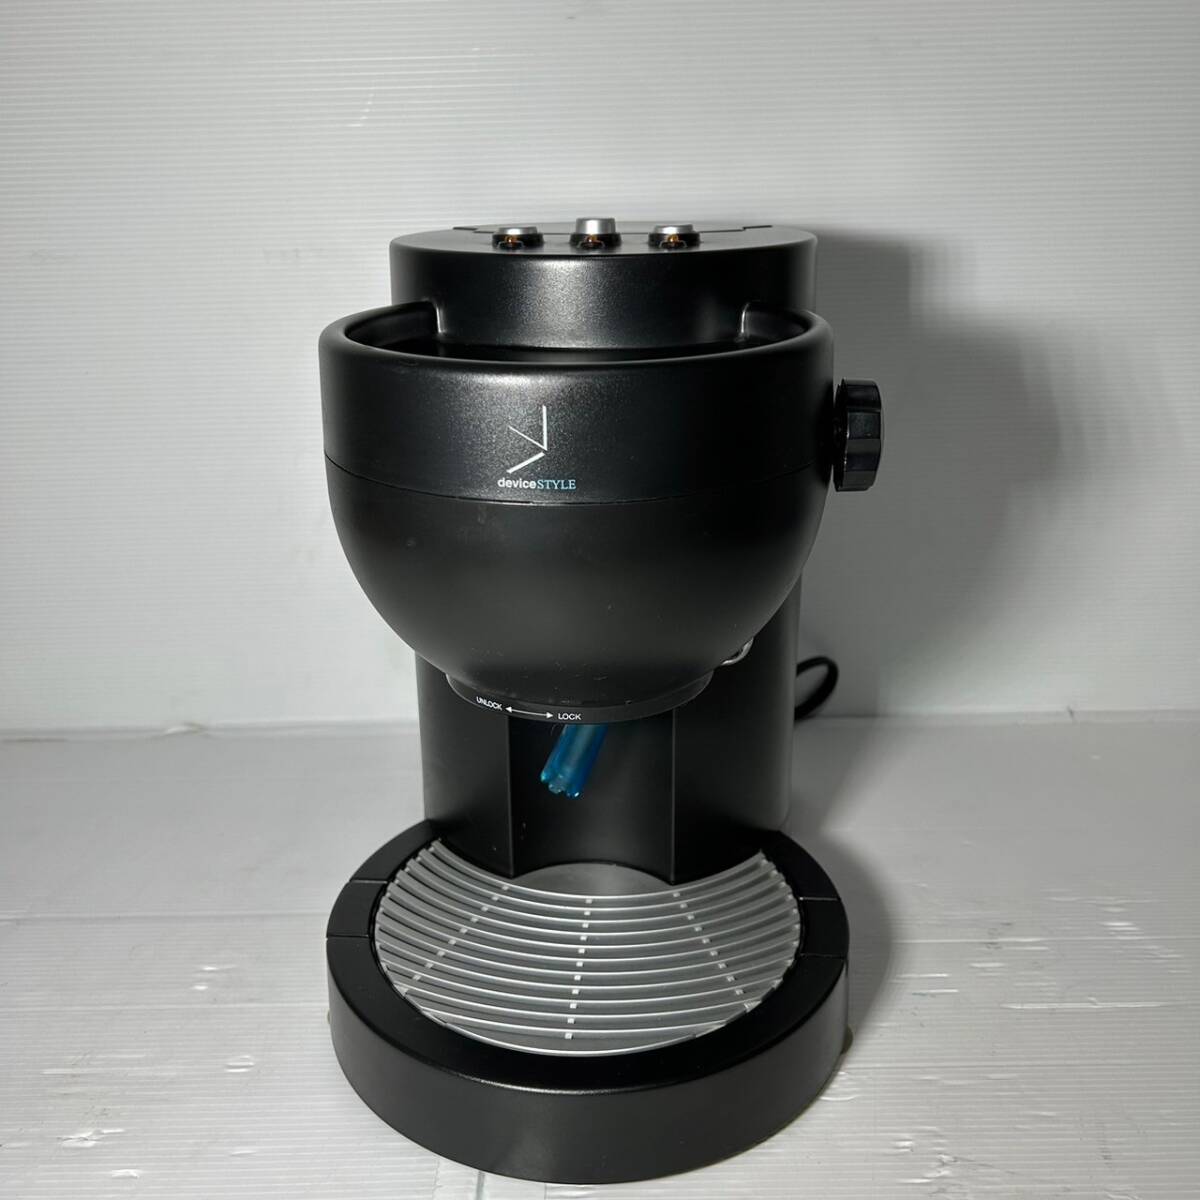 〈439〉deviceSTYLE デバイスタイル エスプレッソマシン TH010 Espresso Machine コーヒーメーカー 通電OKの画像1